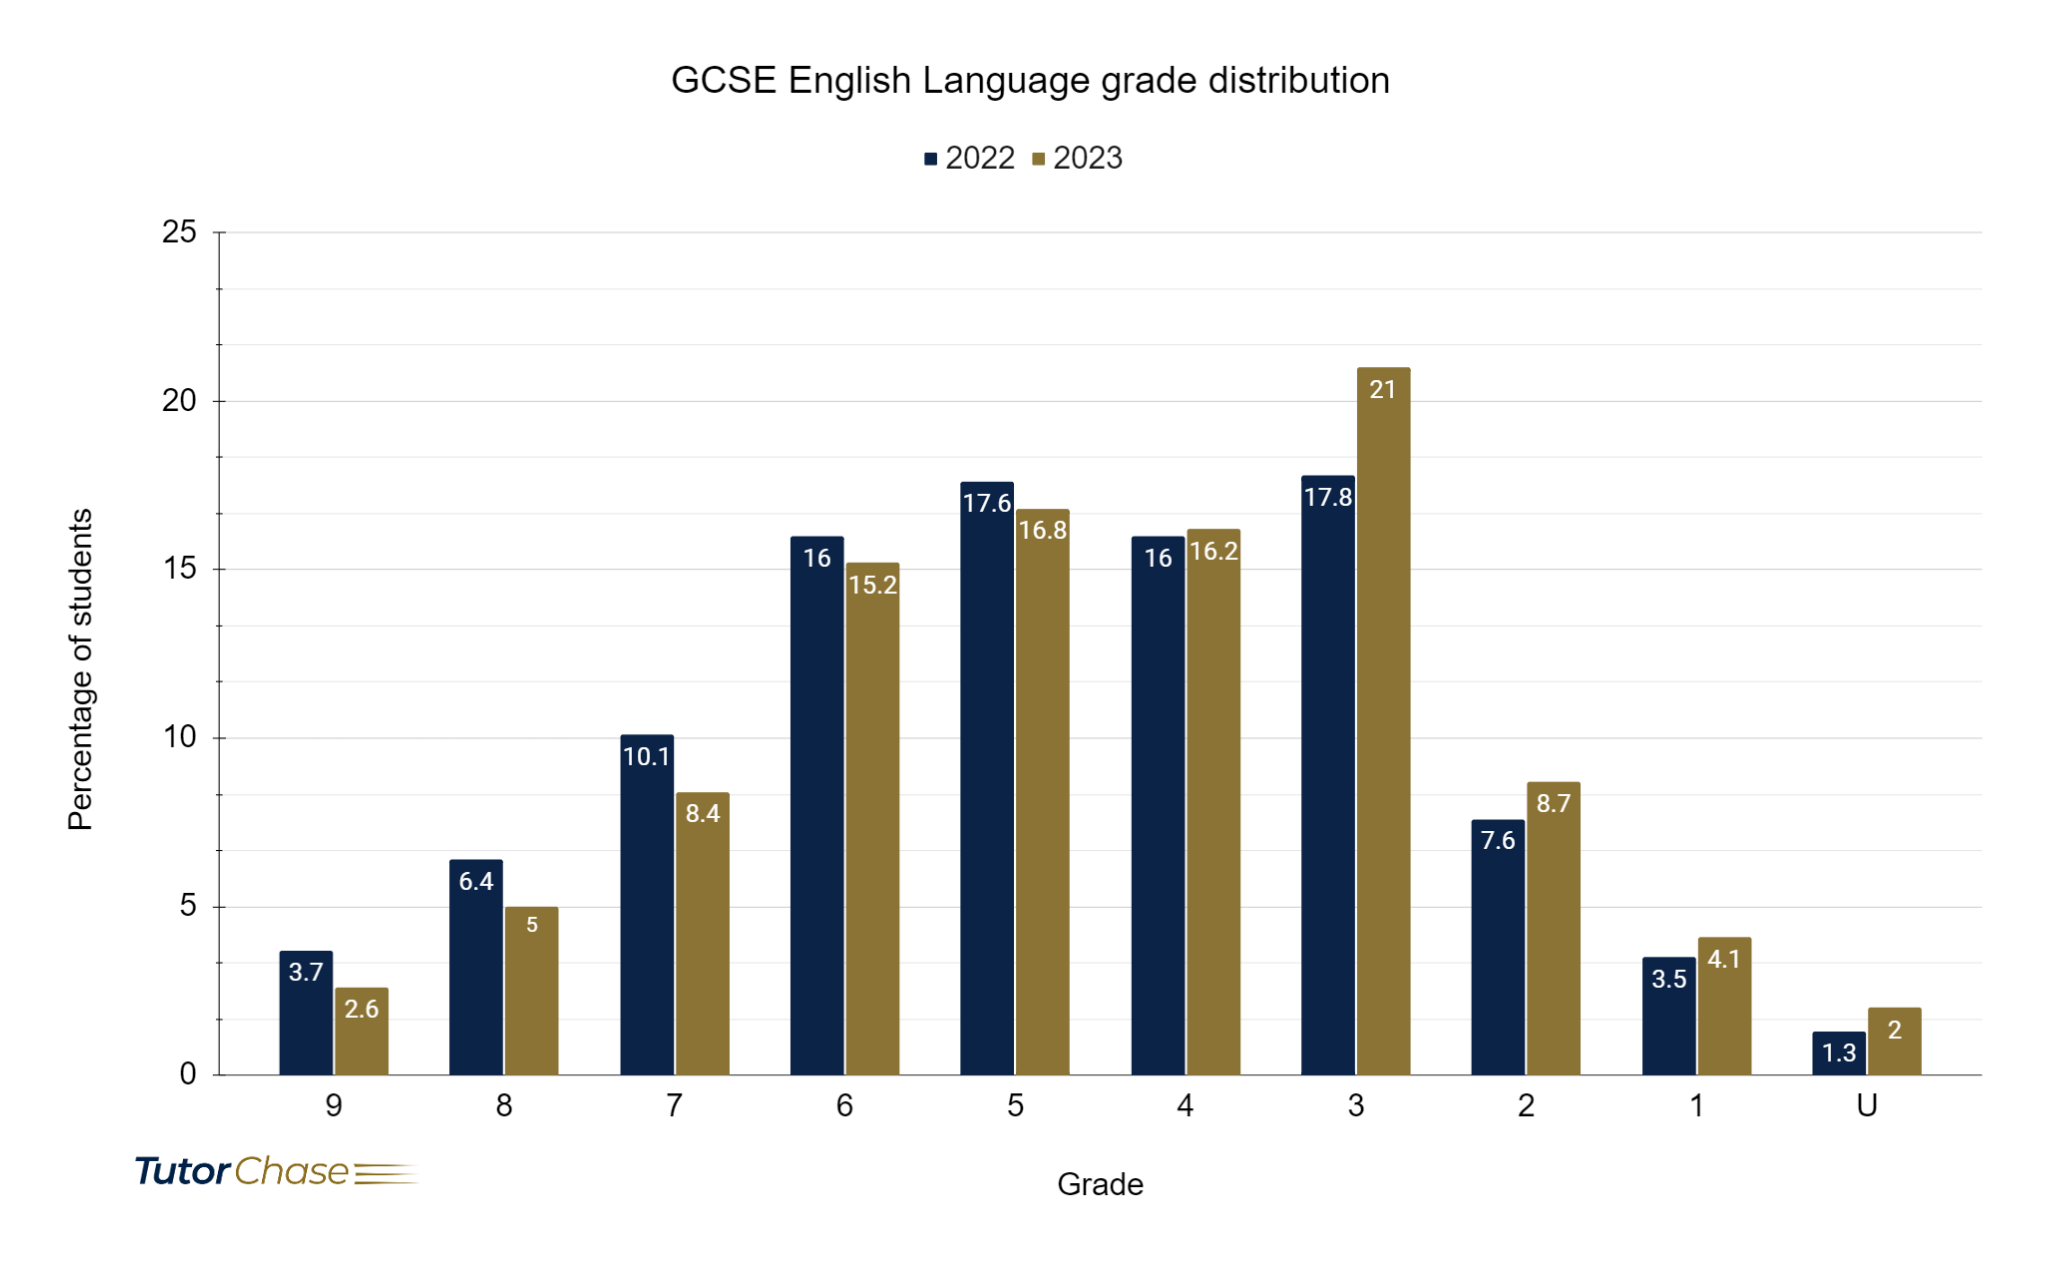 GCSE English Language grade distribution for 2022 and 2023